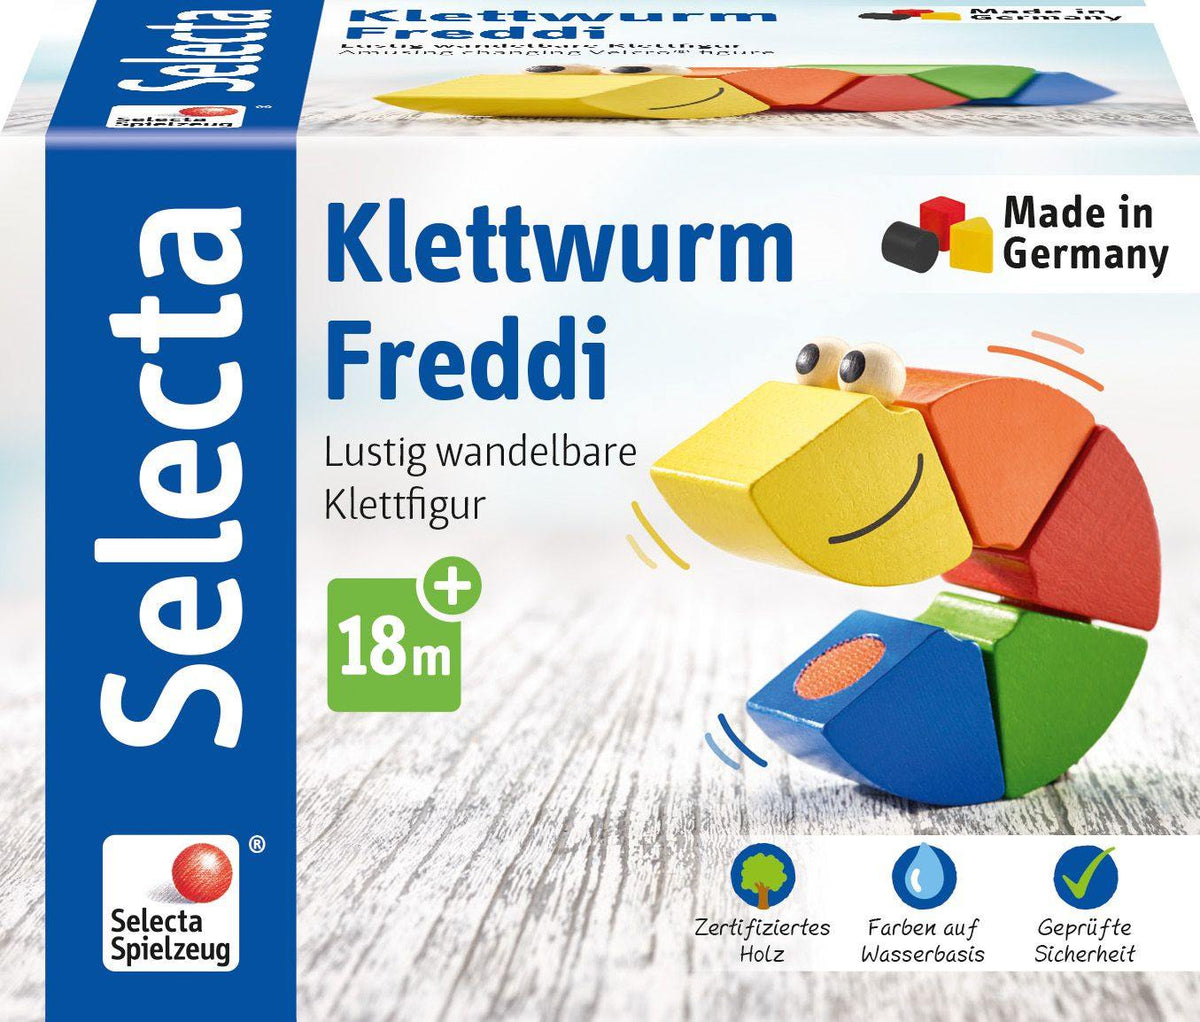 Klettwurm Freddi - www. kunstundspiel .de 62040